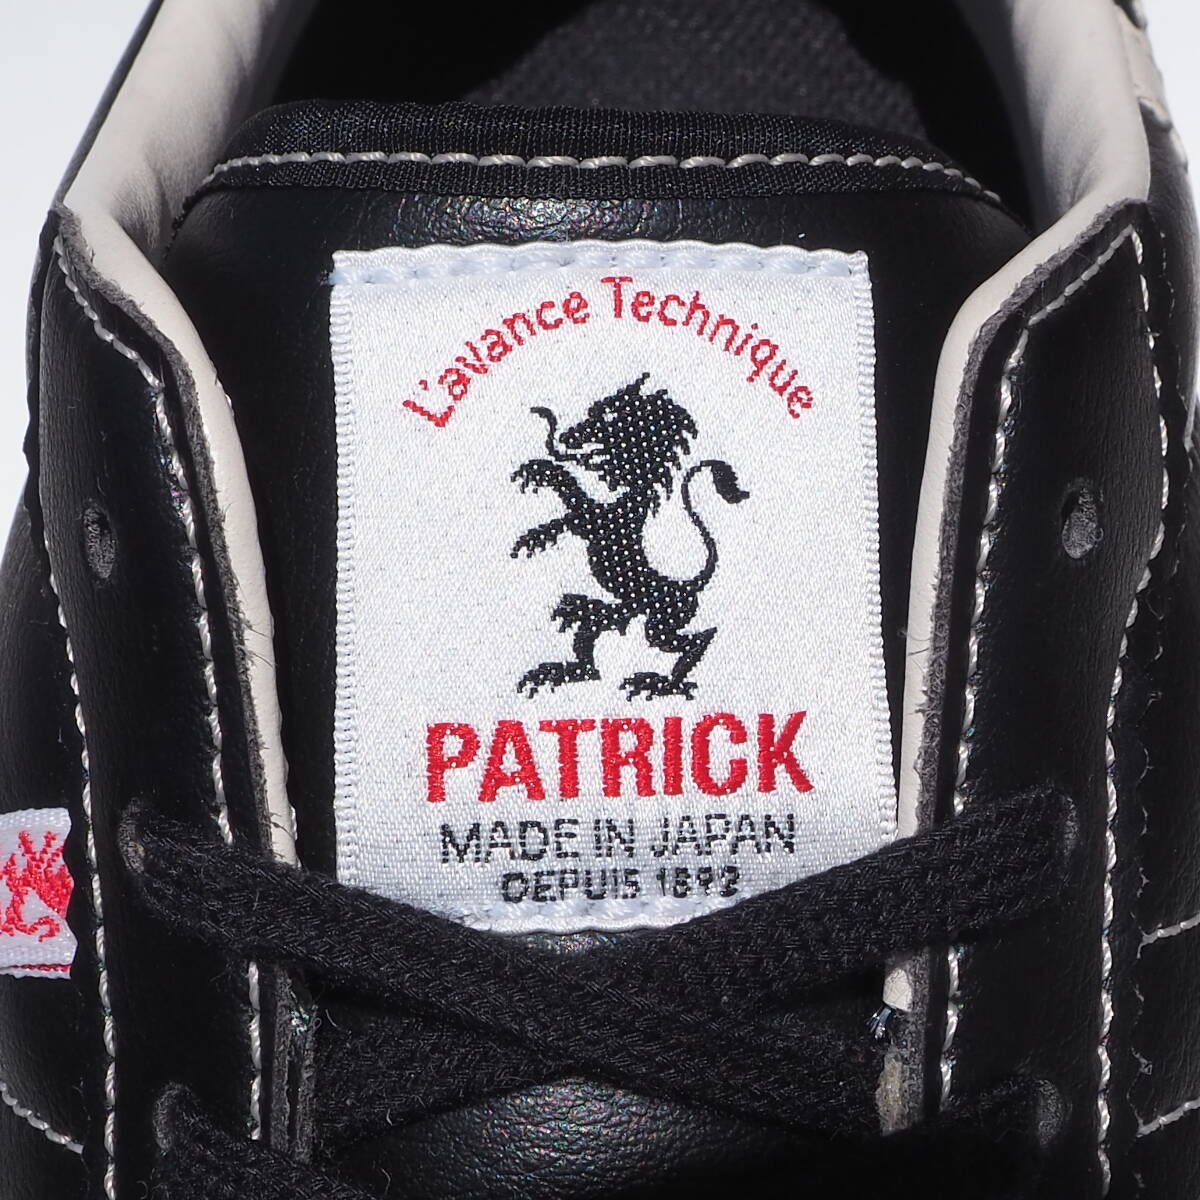  прекрасный товар!! редкость 42 / 26,5cm сделано в Японии PATRICK SULLYshu Lee чёрный x белый Patrick спортивные туфли 